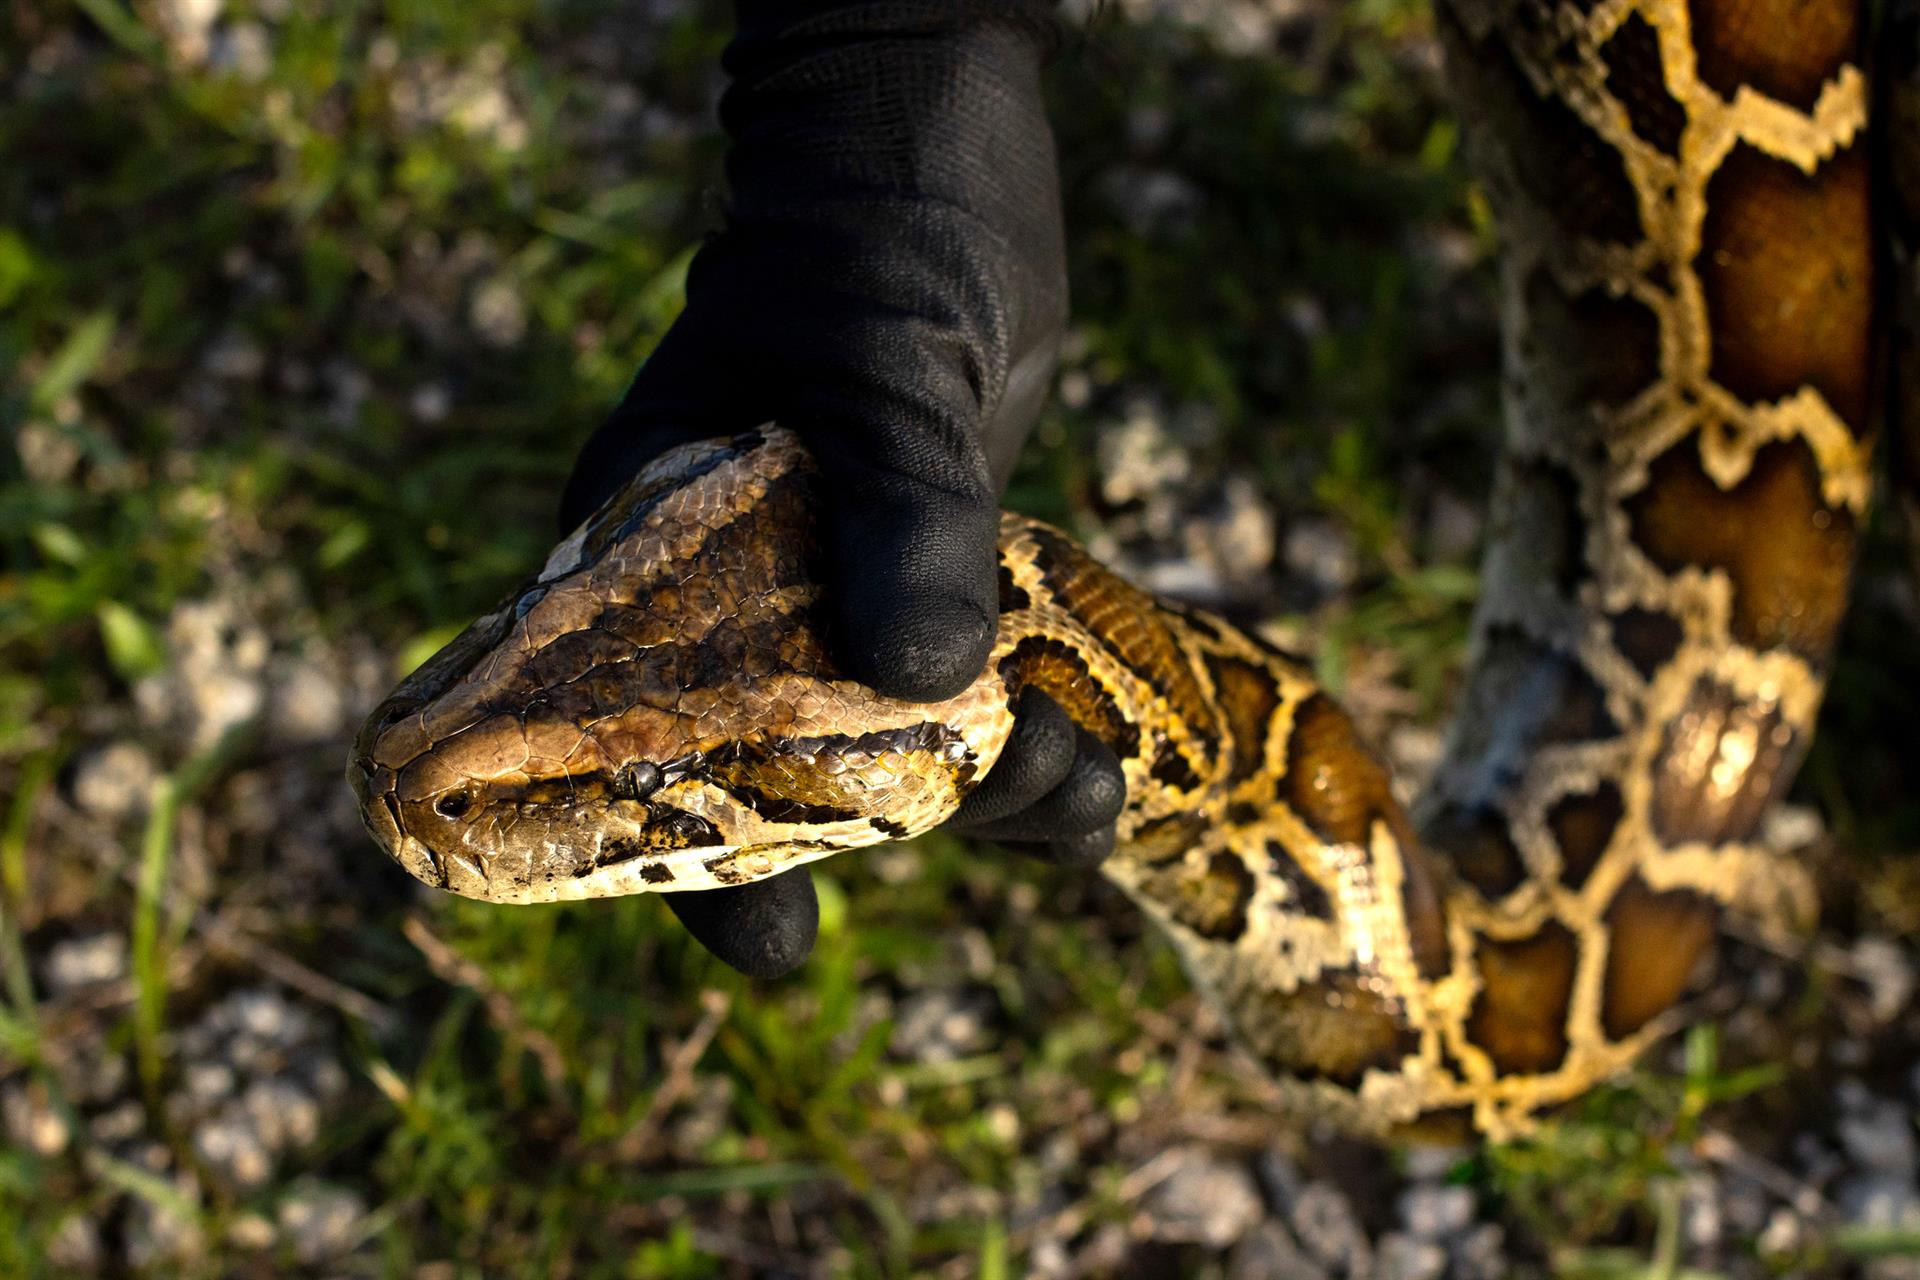 Fotografía sin fecha divulgada este jueves, 20 de octubre, por la Comisión de Conservación de Pesca y Vida Silvestre (FWC) de Florida en la que se registro la mano de una persona al sostener la cabeza de una pitón birmana, durante una competencia de caza de estos reptiles, en los Everglades (Florida). EFE/FWC